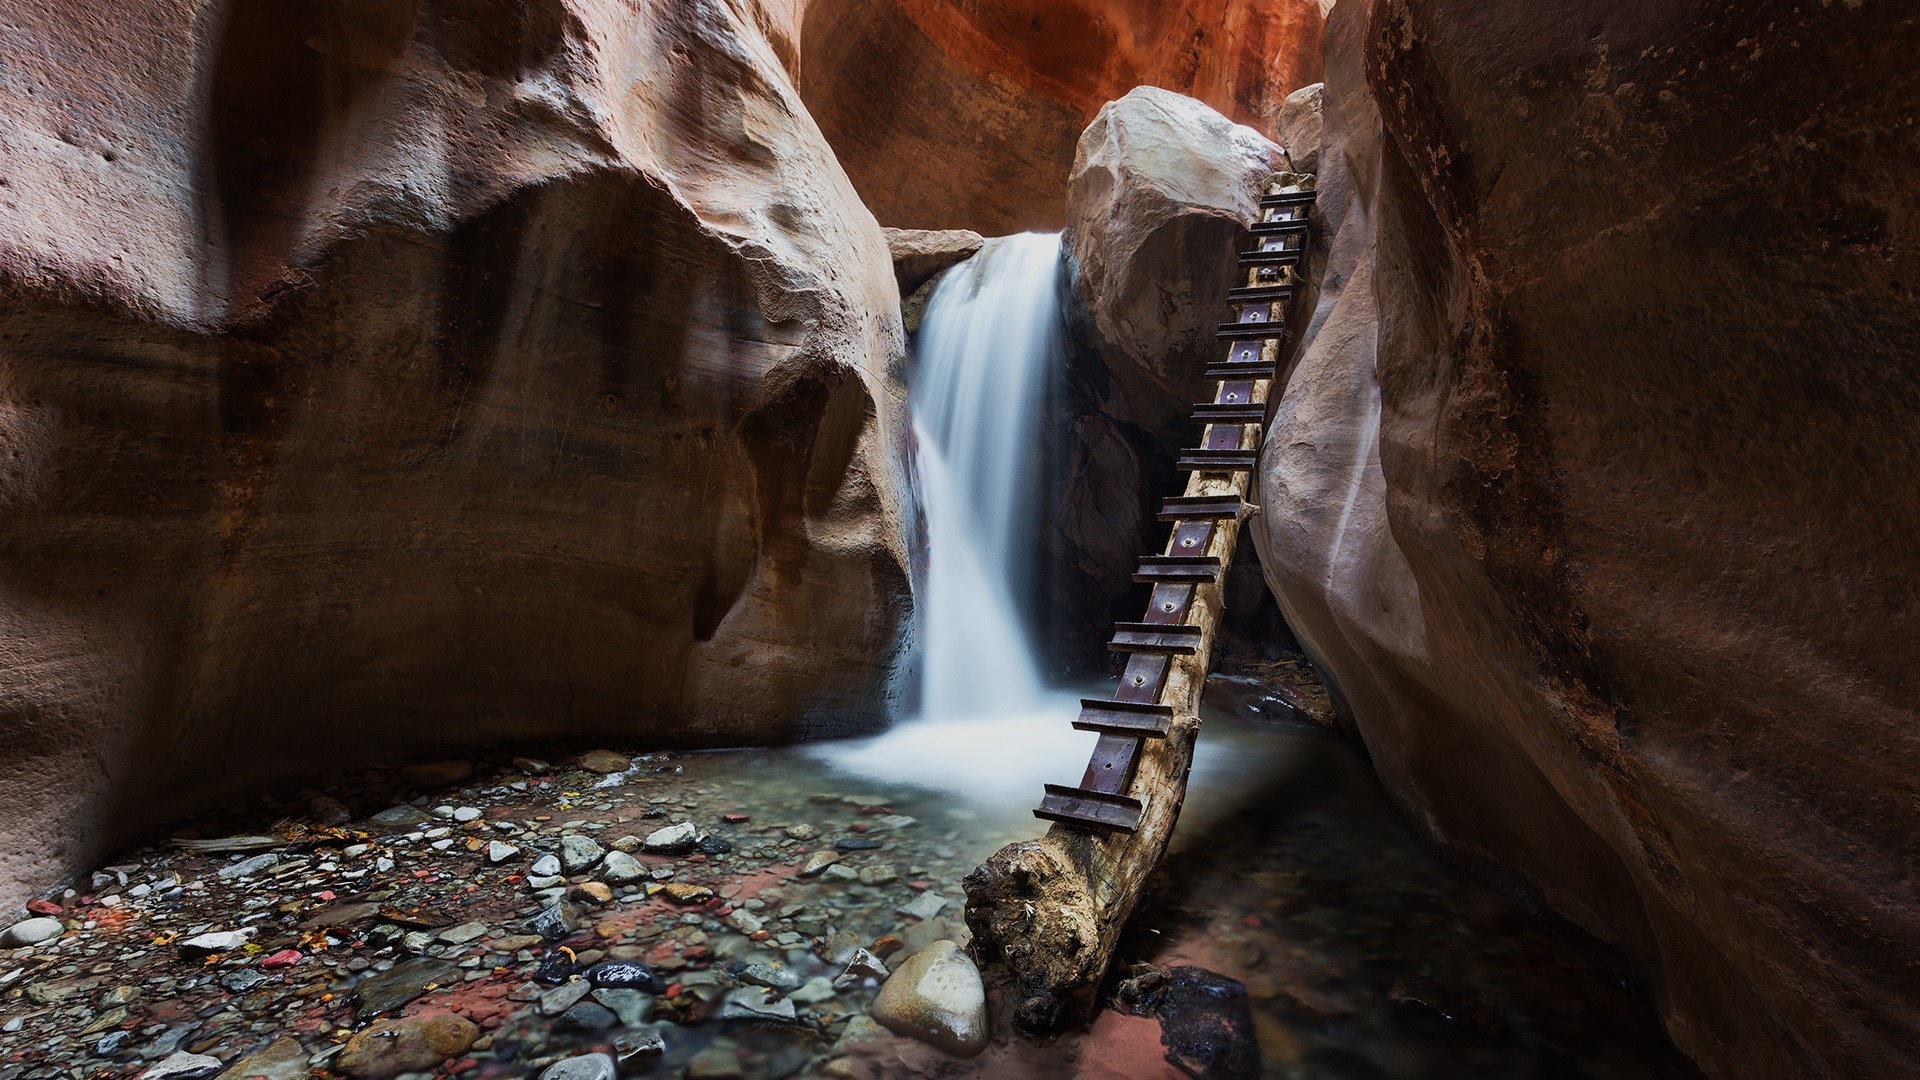 General 1920x1080 nature rocks canyon water spring long exposure Kanarraville Falls Utah USA hiking ladder